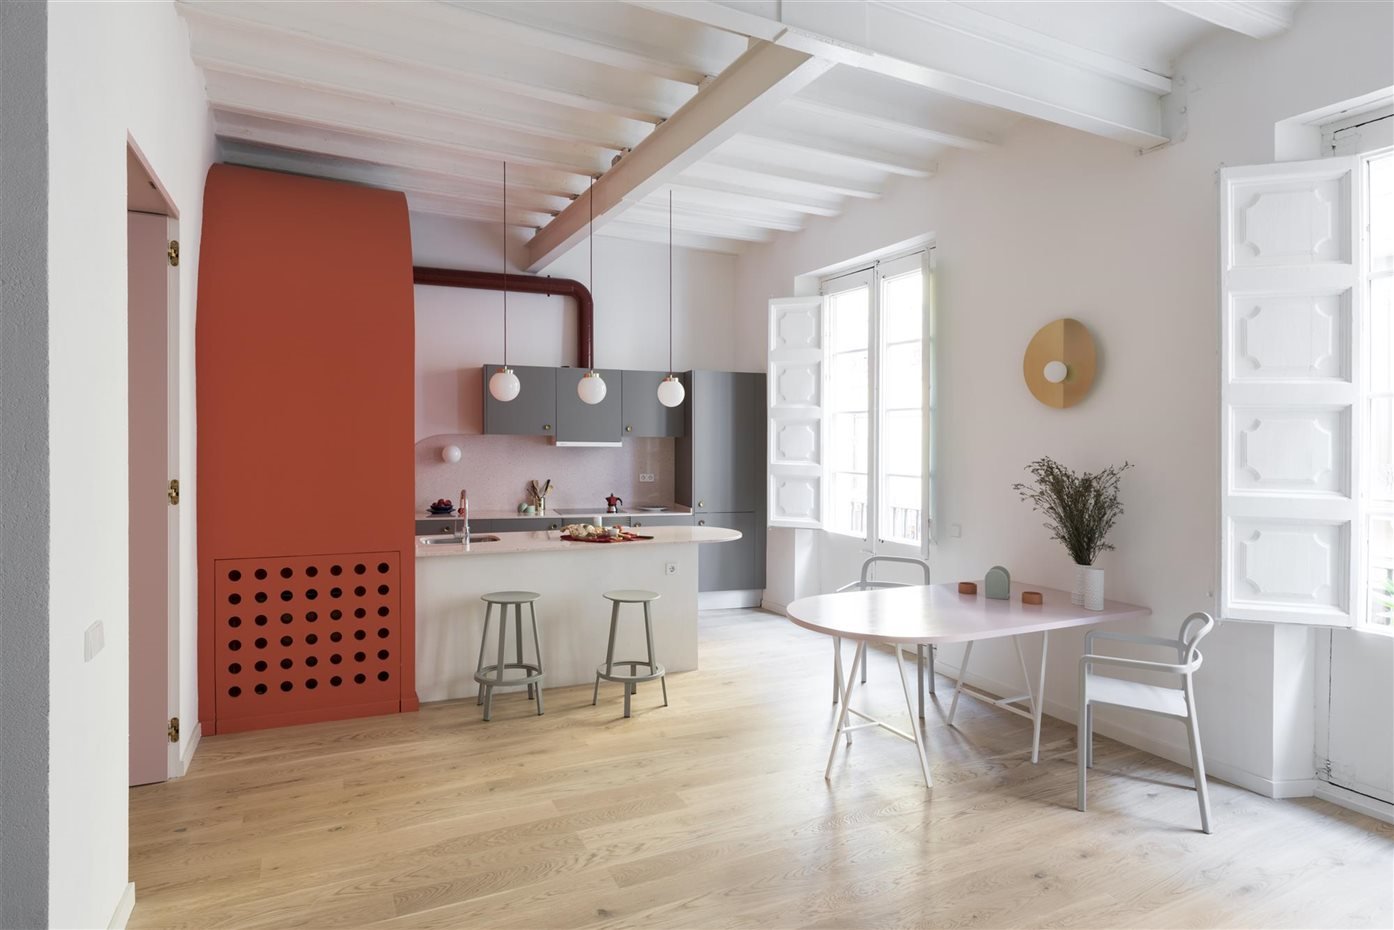 piso en barcelona con paredes de color rosa cocina de estilo industrial vigas gecho pintadas de color blanco